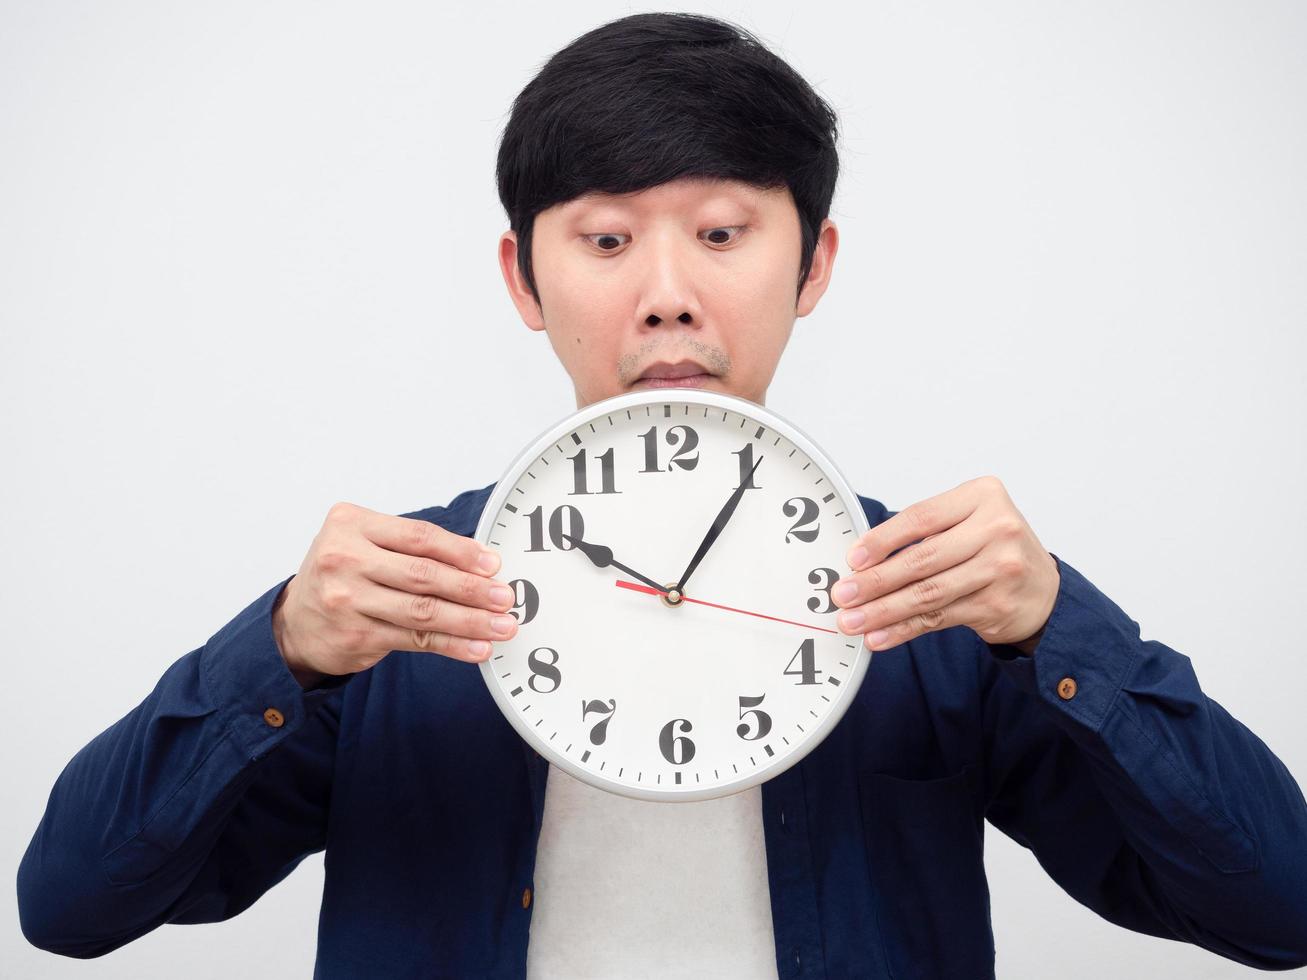 homme asiatique ravi de regarder l'horloge dans son portrait à la main, concept tardif photo